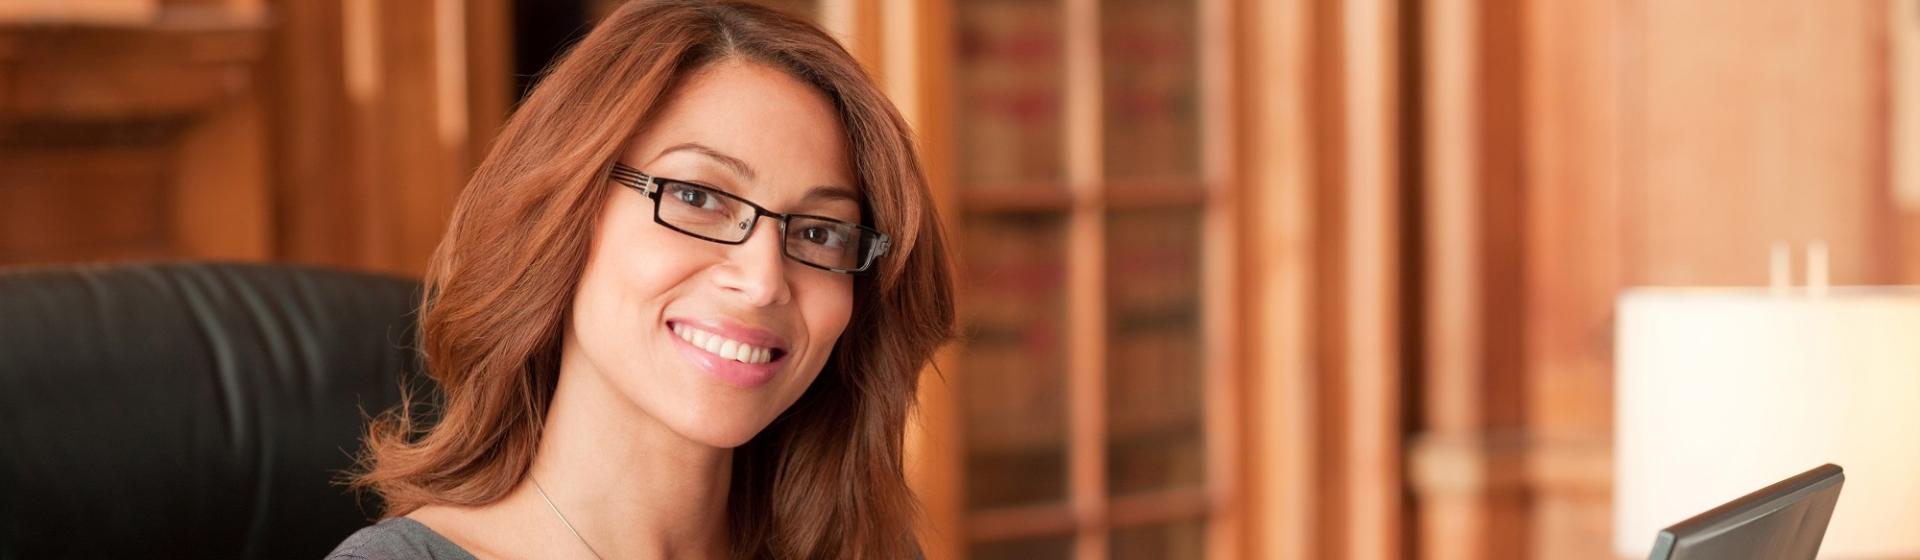 Femme souriante en train de réaliser un devis assurance protection juridique en ligne